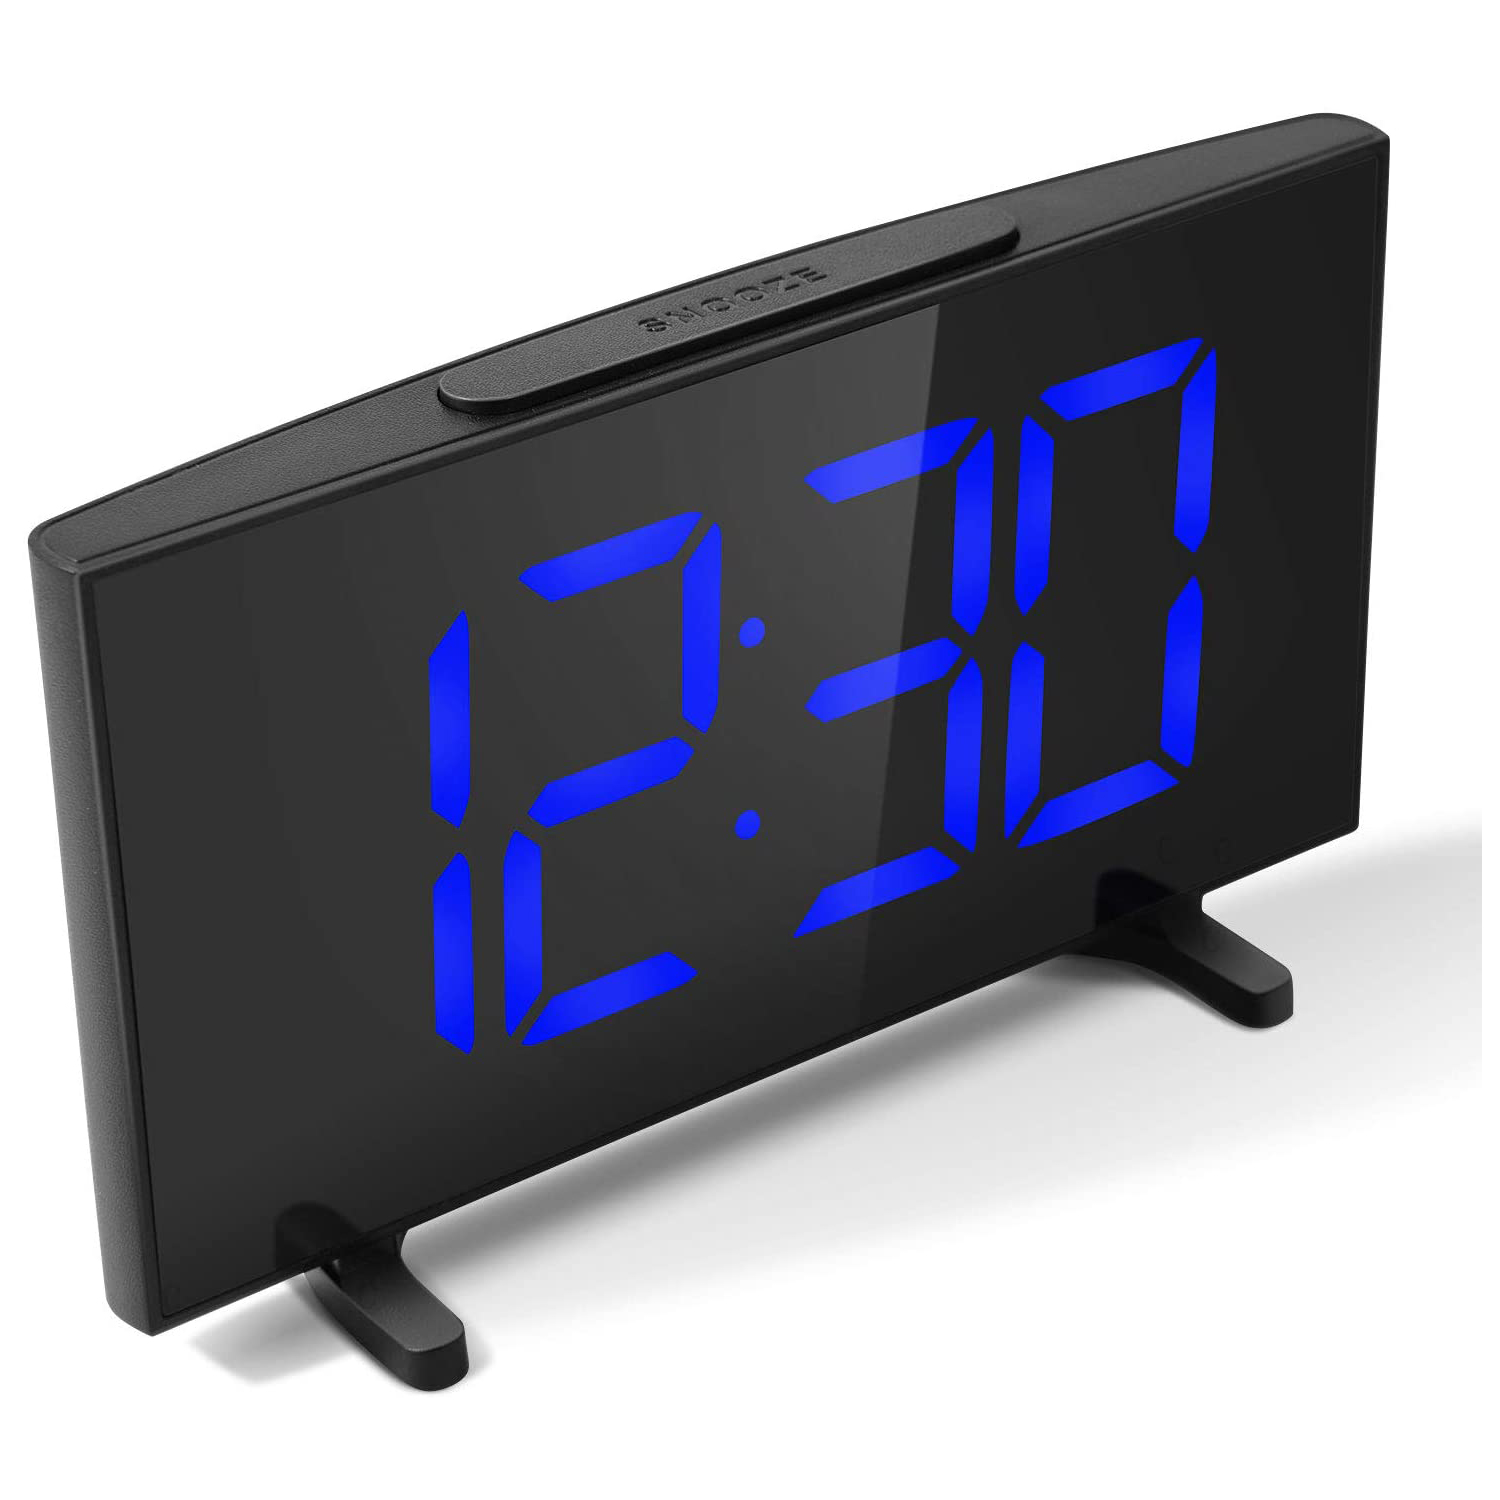 Inclus Adaptateur et Câble dUSB YISSVIC Réveil Numérique LED Réveil Digital Equipé de 2 Alarmes Fonction Snooze Luminosité Réglable sur 6 Niveaux Formats 12/24 Heures Version 2019